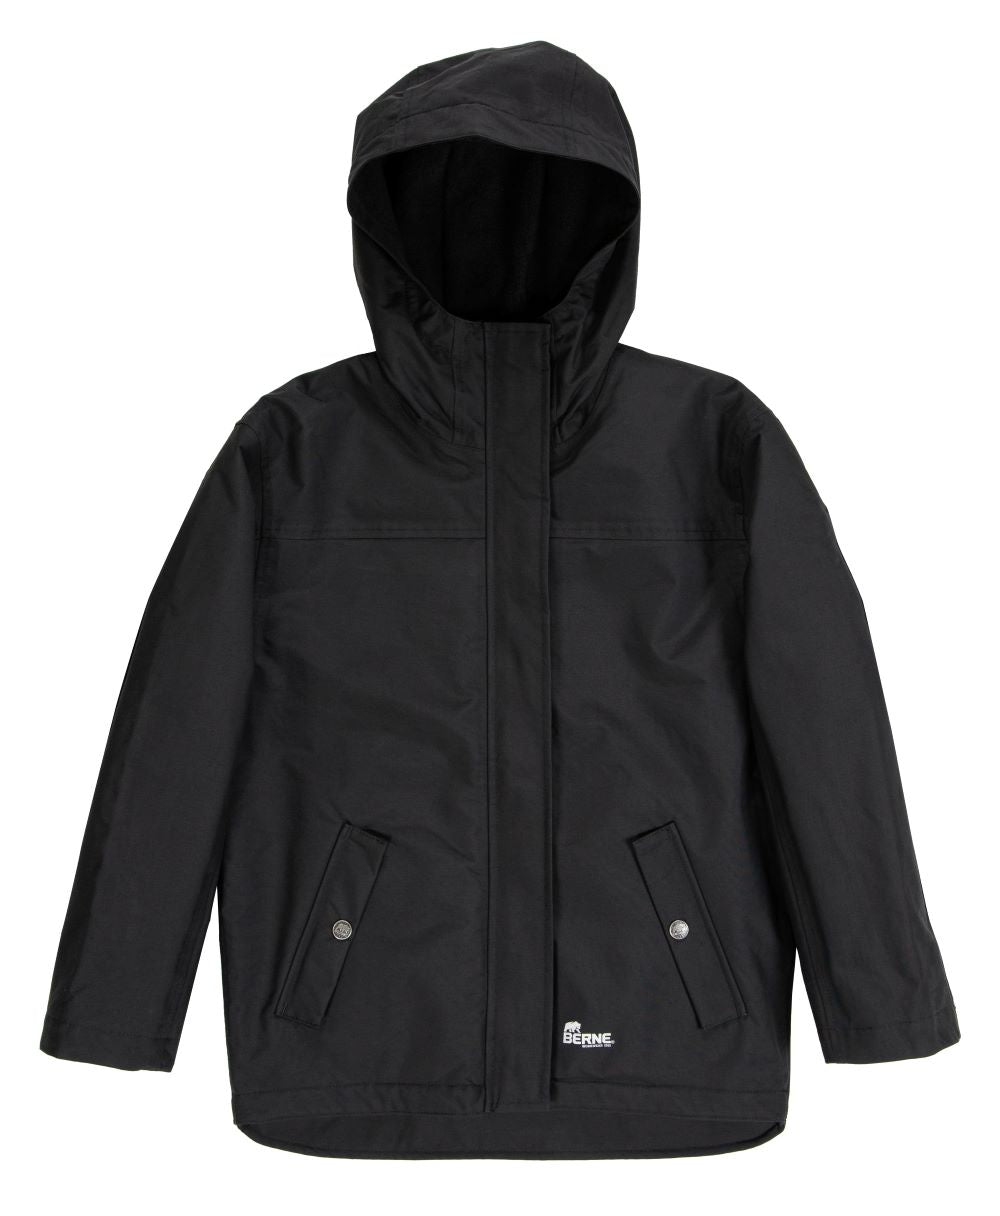 'Berne' Youth Splash Insulated WP Jacket - Black